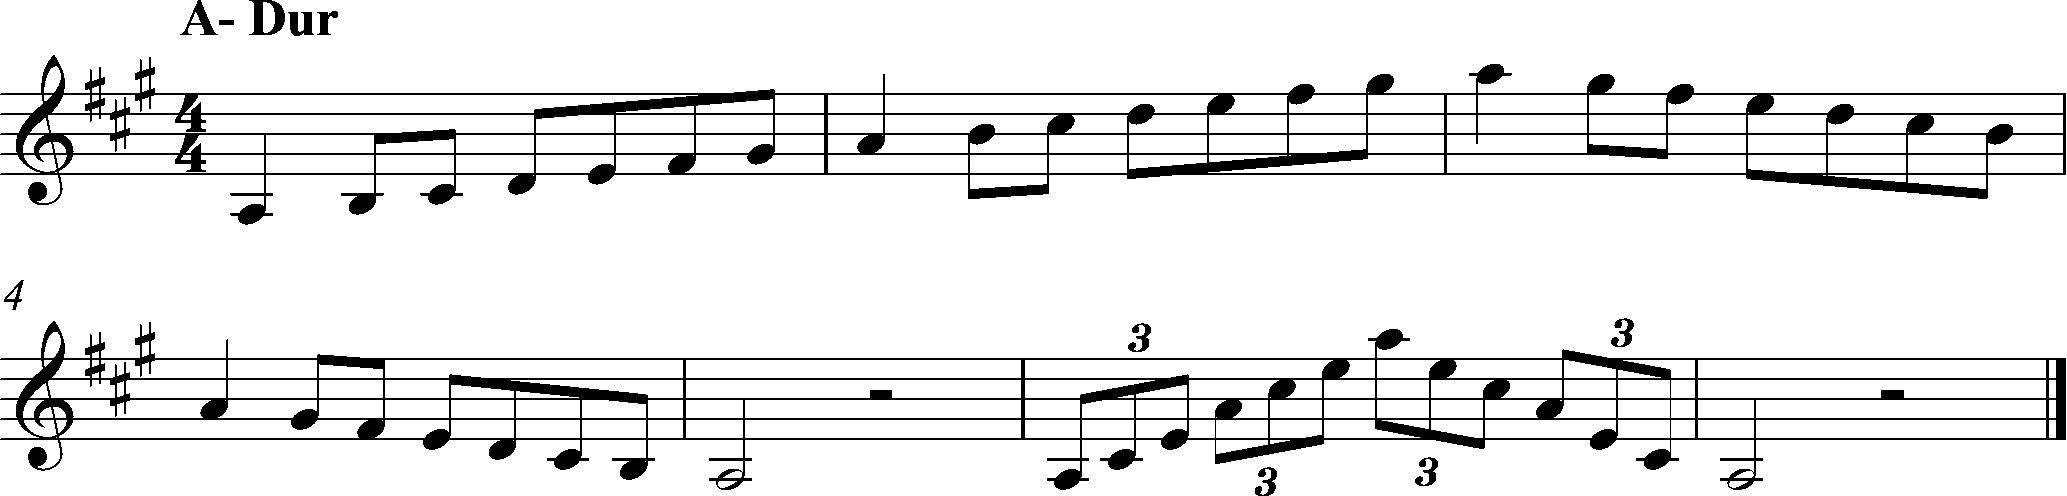 A-Dur, Tonleiter Klarinette